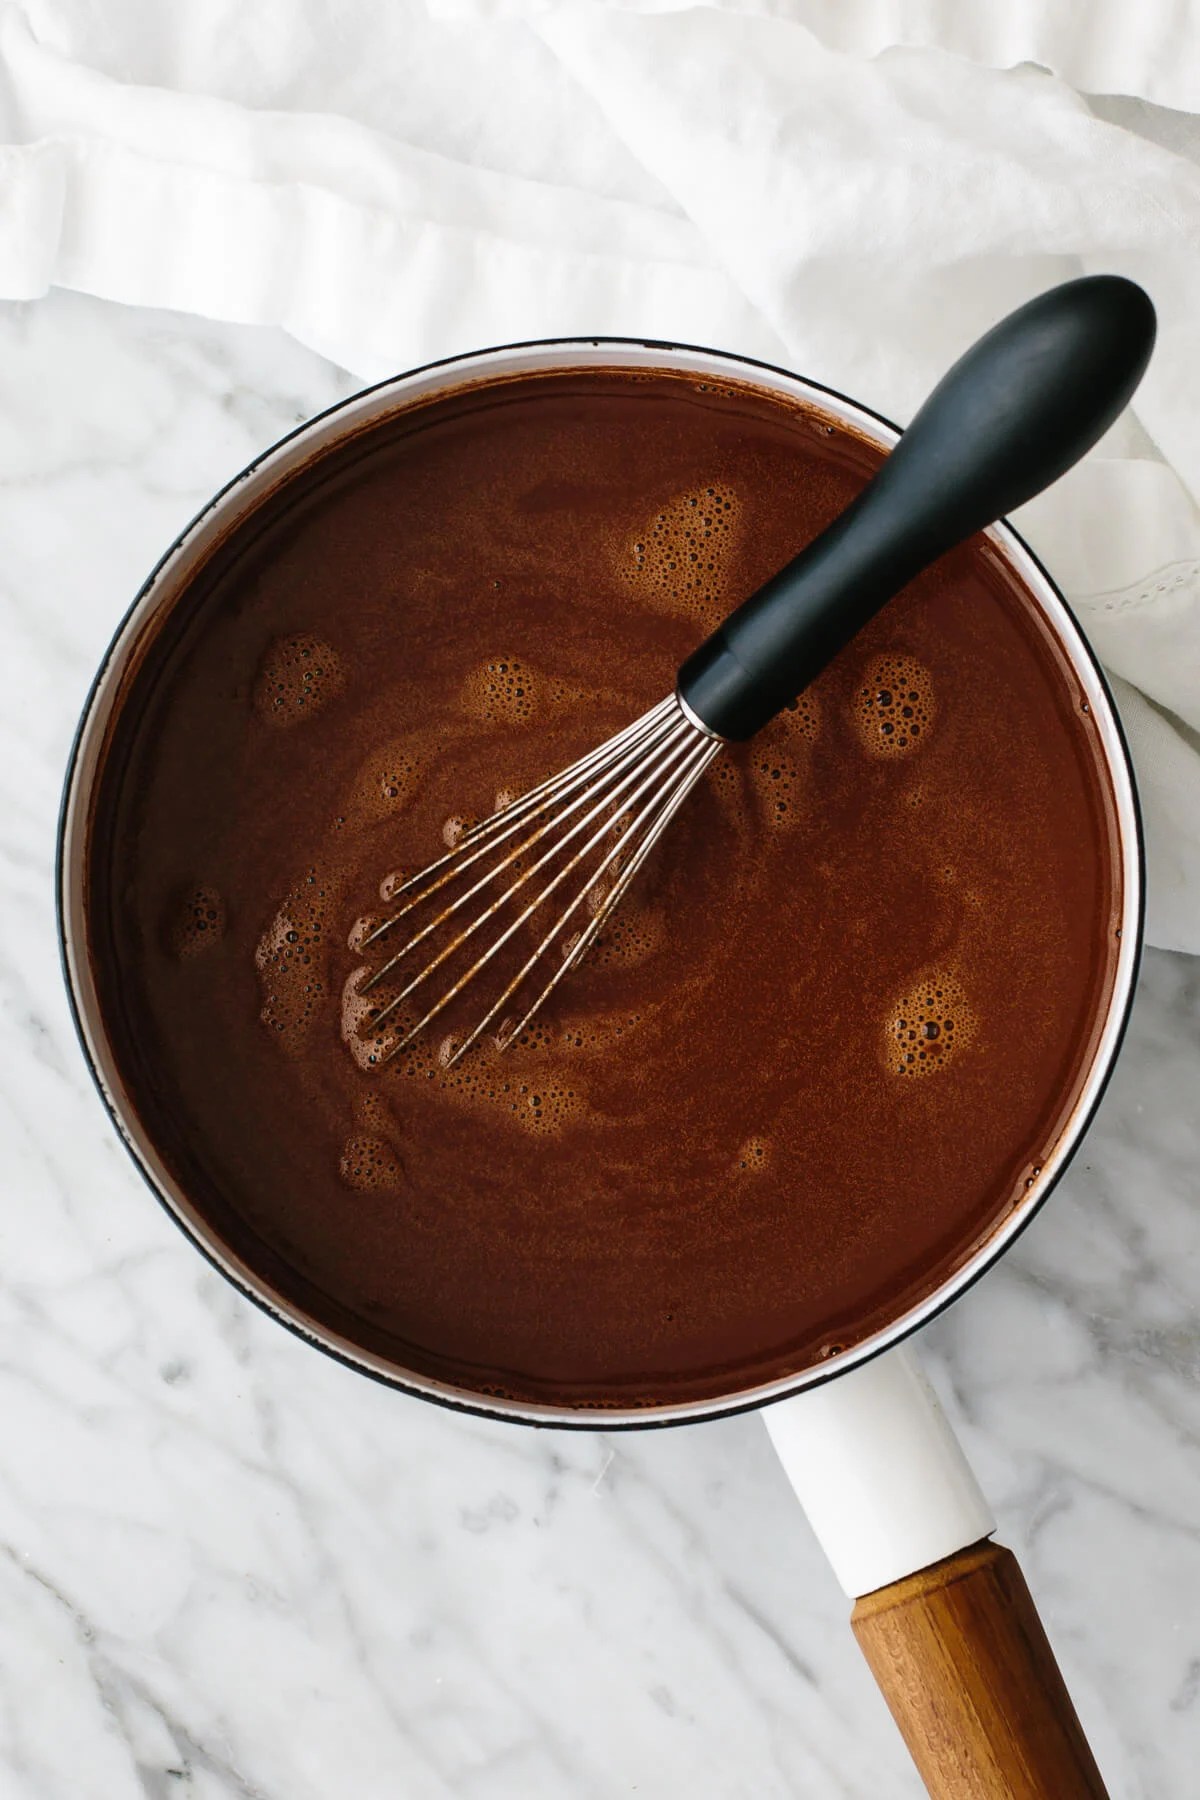 Hot chocolate in a pot.